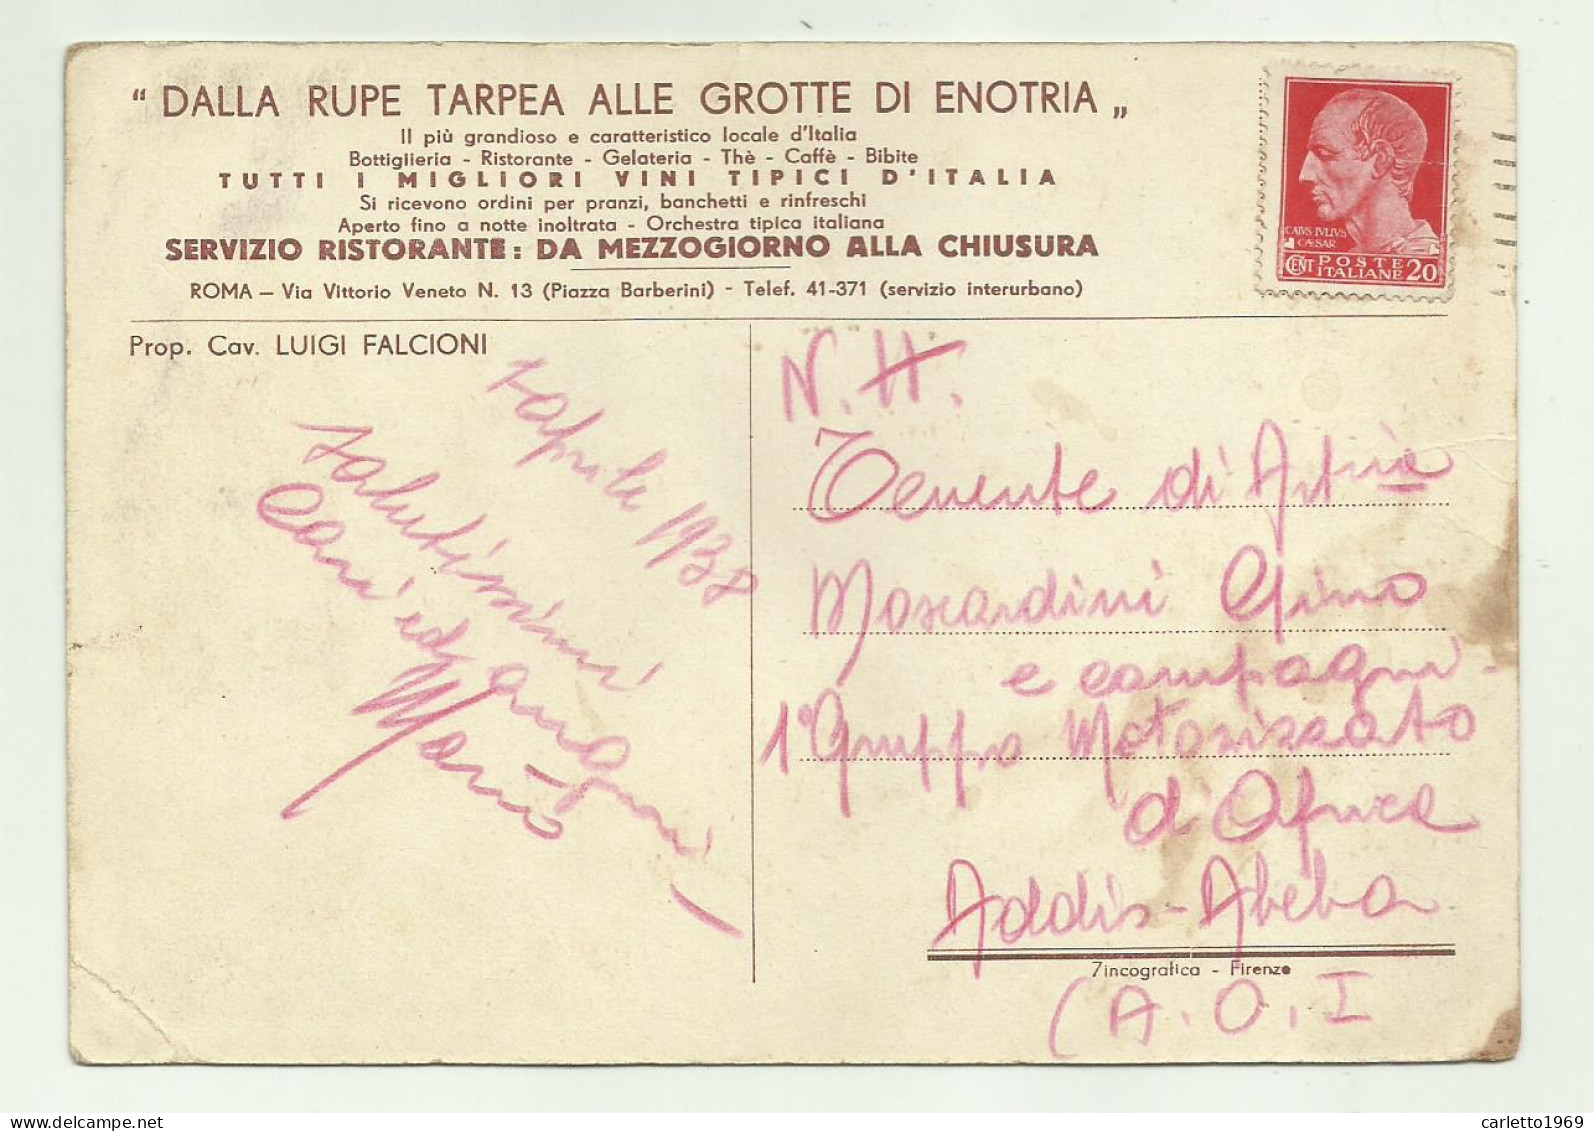 DALLA RUPE TARPEA ALLE GROTTE DI ENOTRIA 1938 - VIAGGIATA FG - Cafes, Hotels & Restaurants